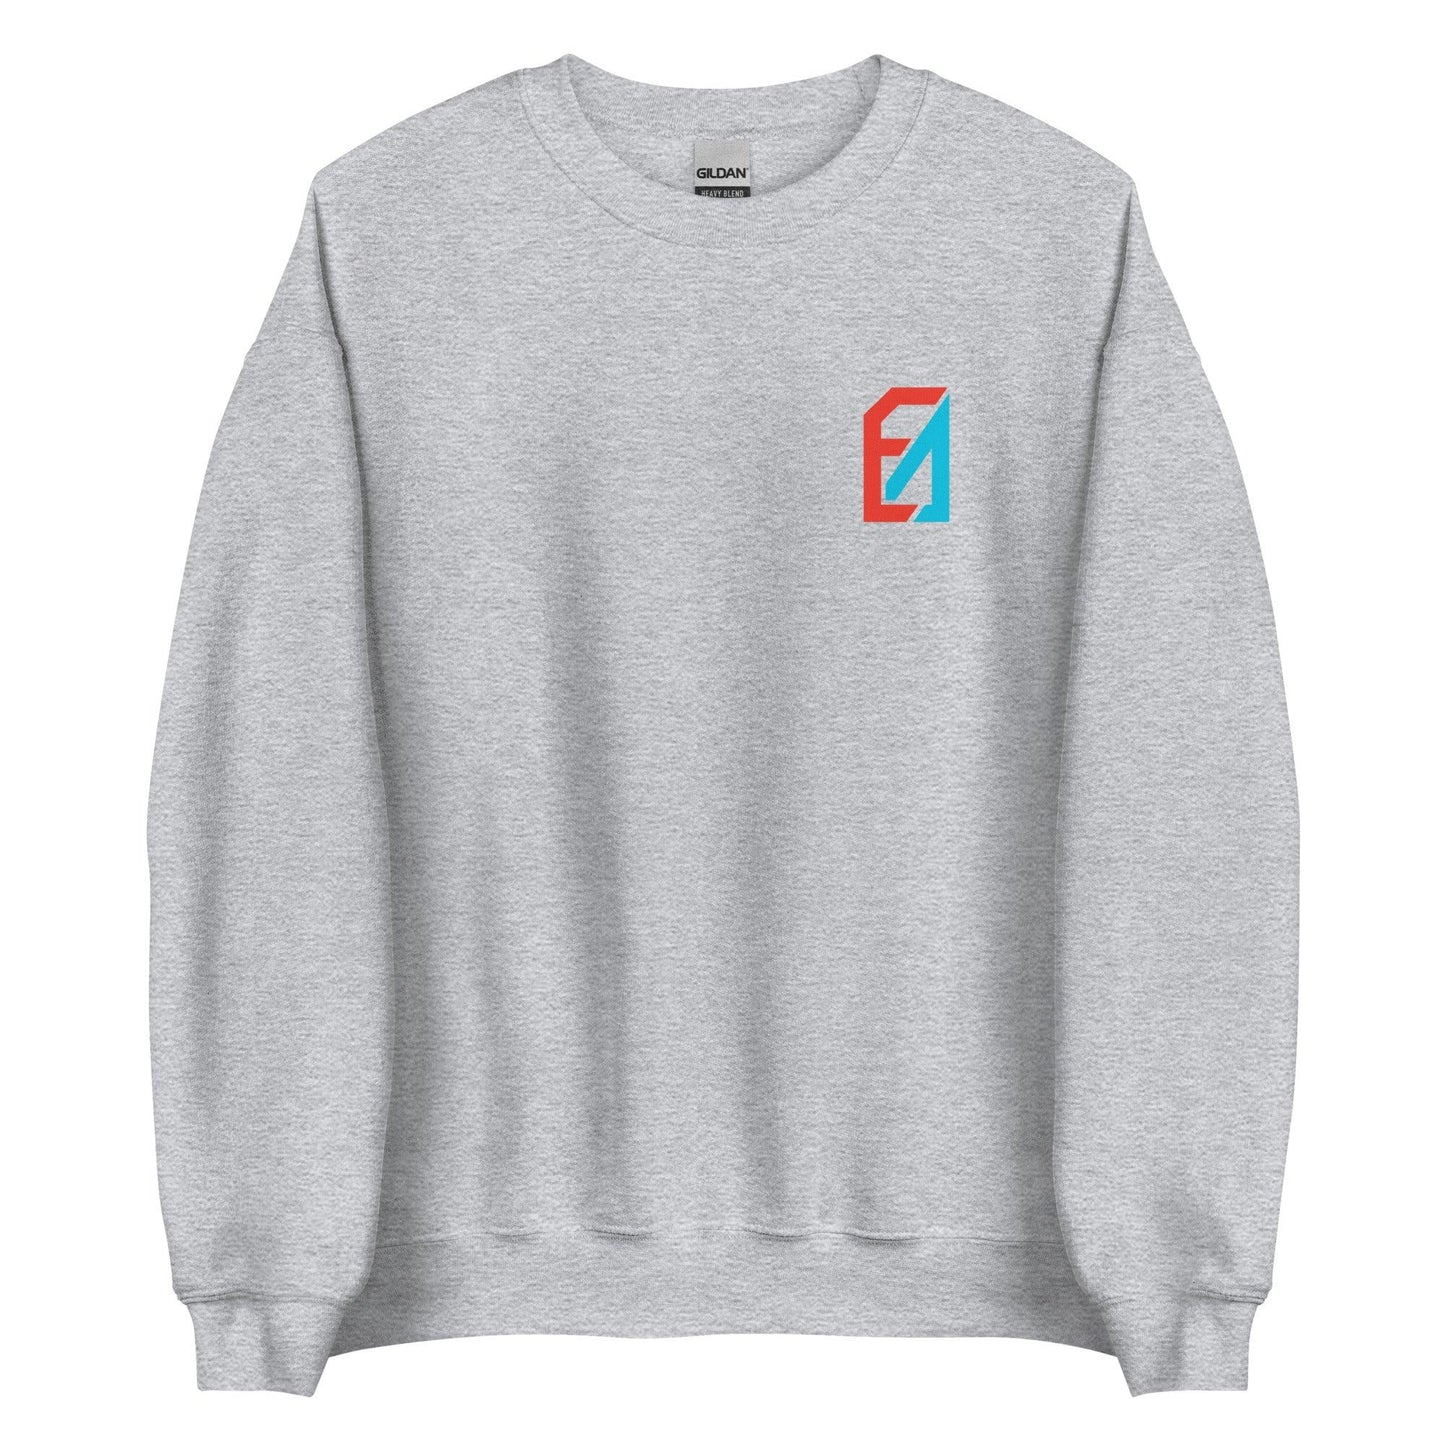 Elijah Brown "Essentials" Sweatshirt - Fan Arch